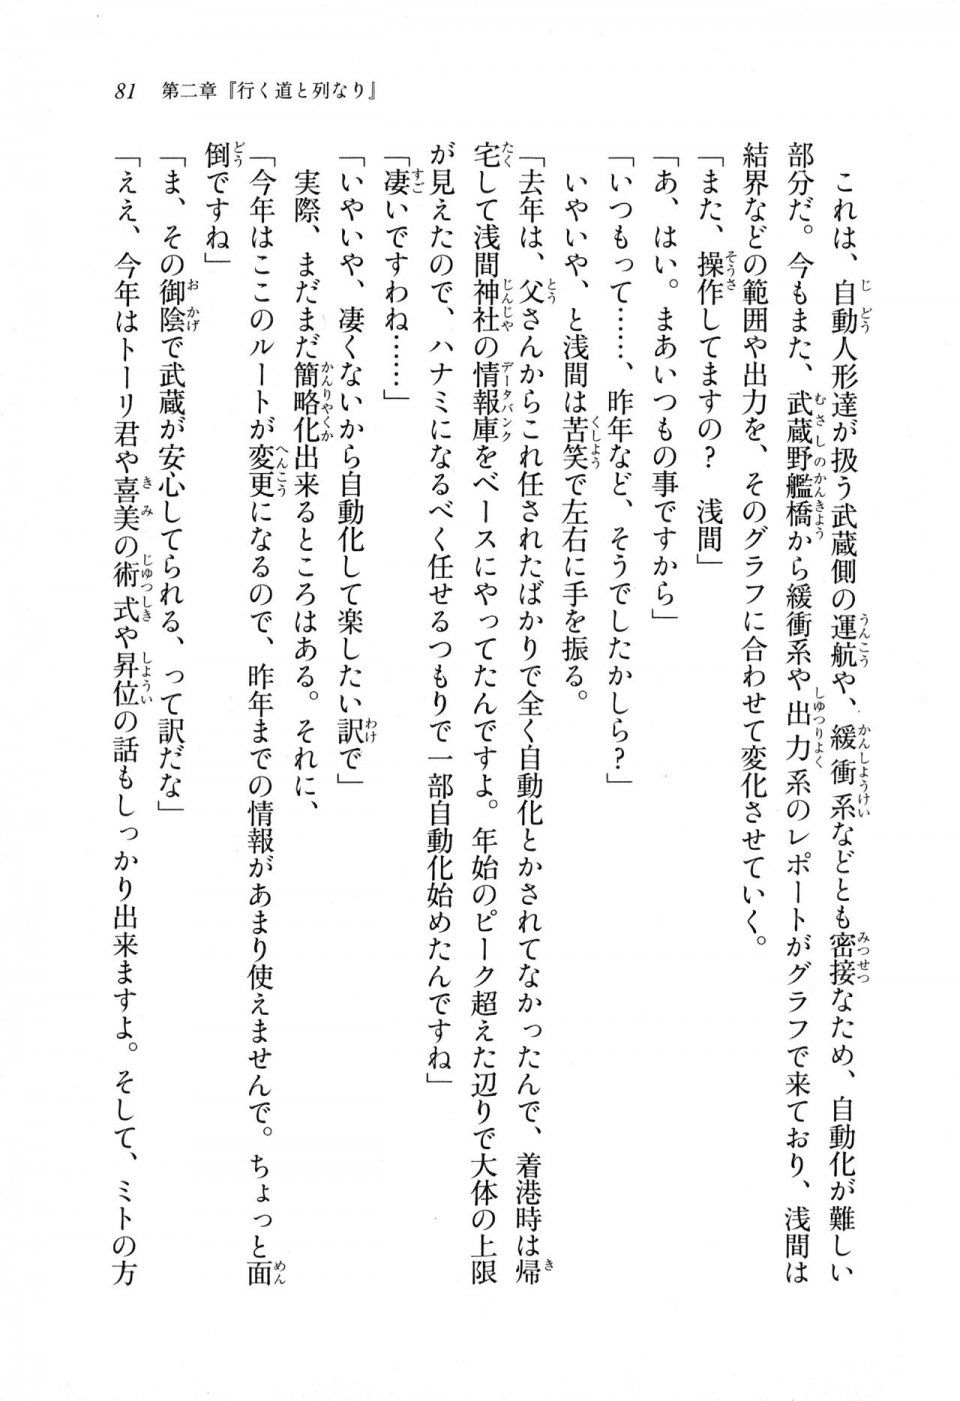 Kyoukai Senjou no Horizon LN Sidestory Vol 1 - Photo #79